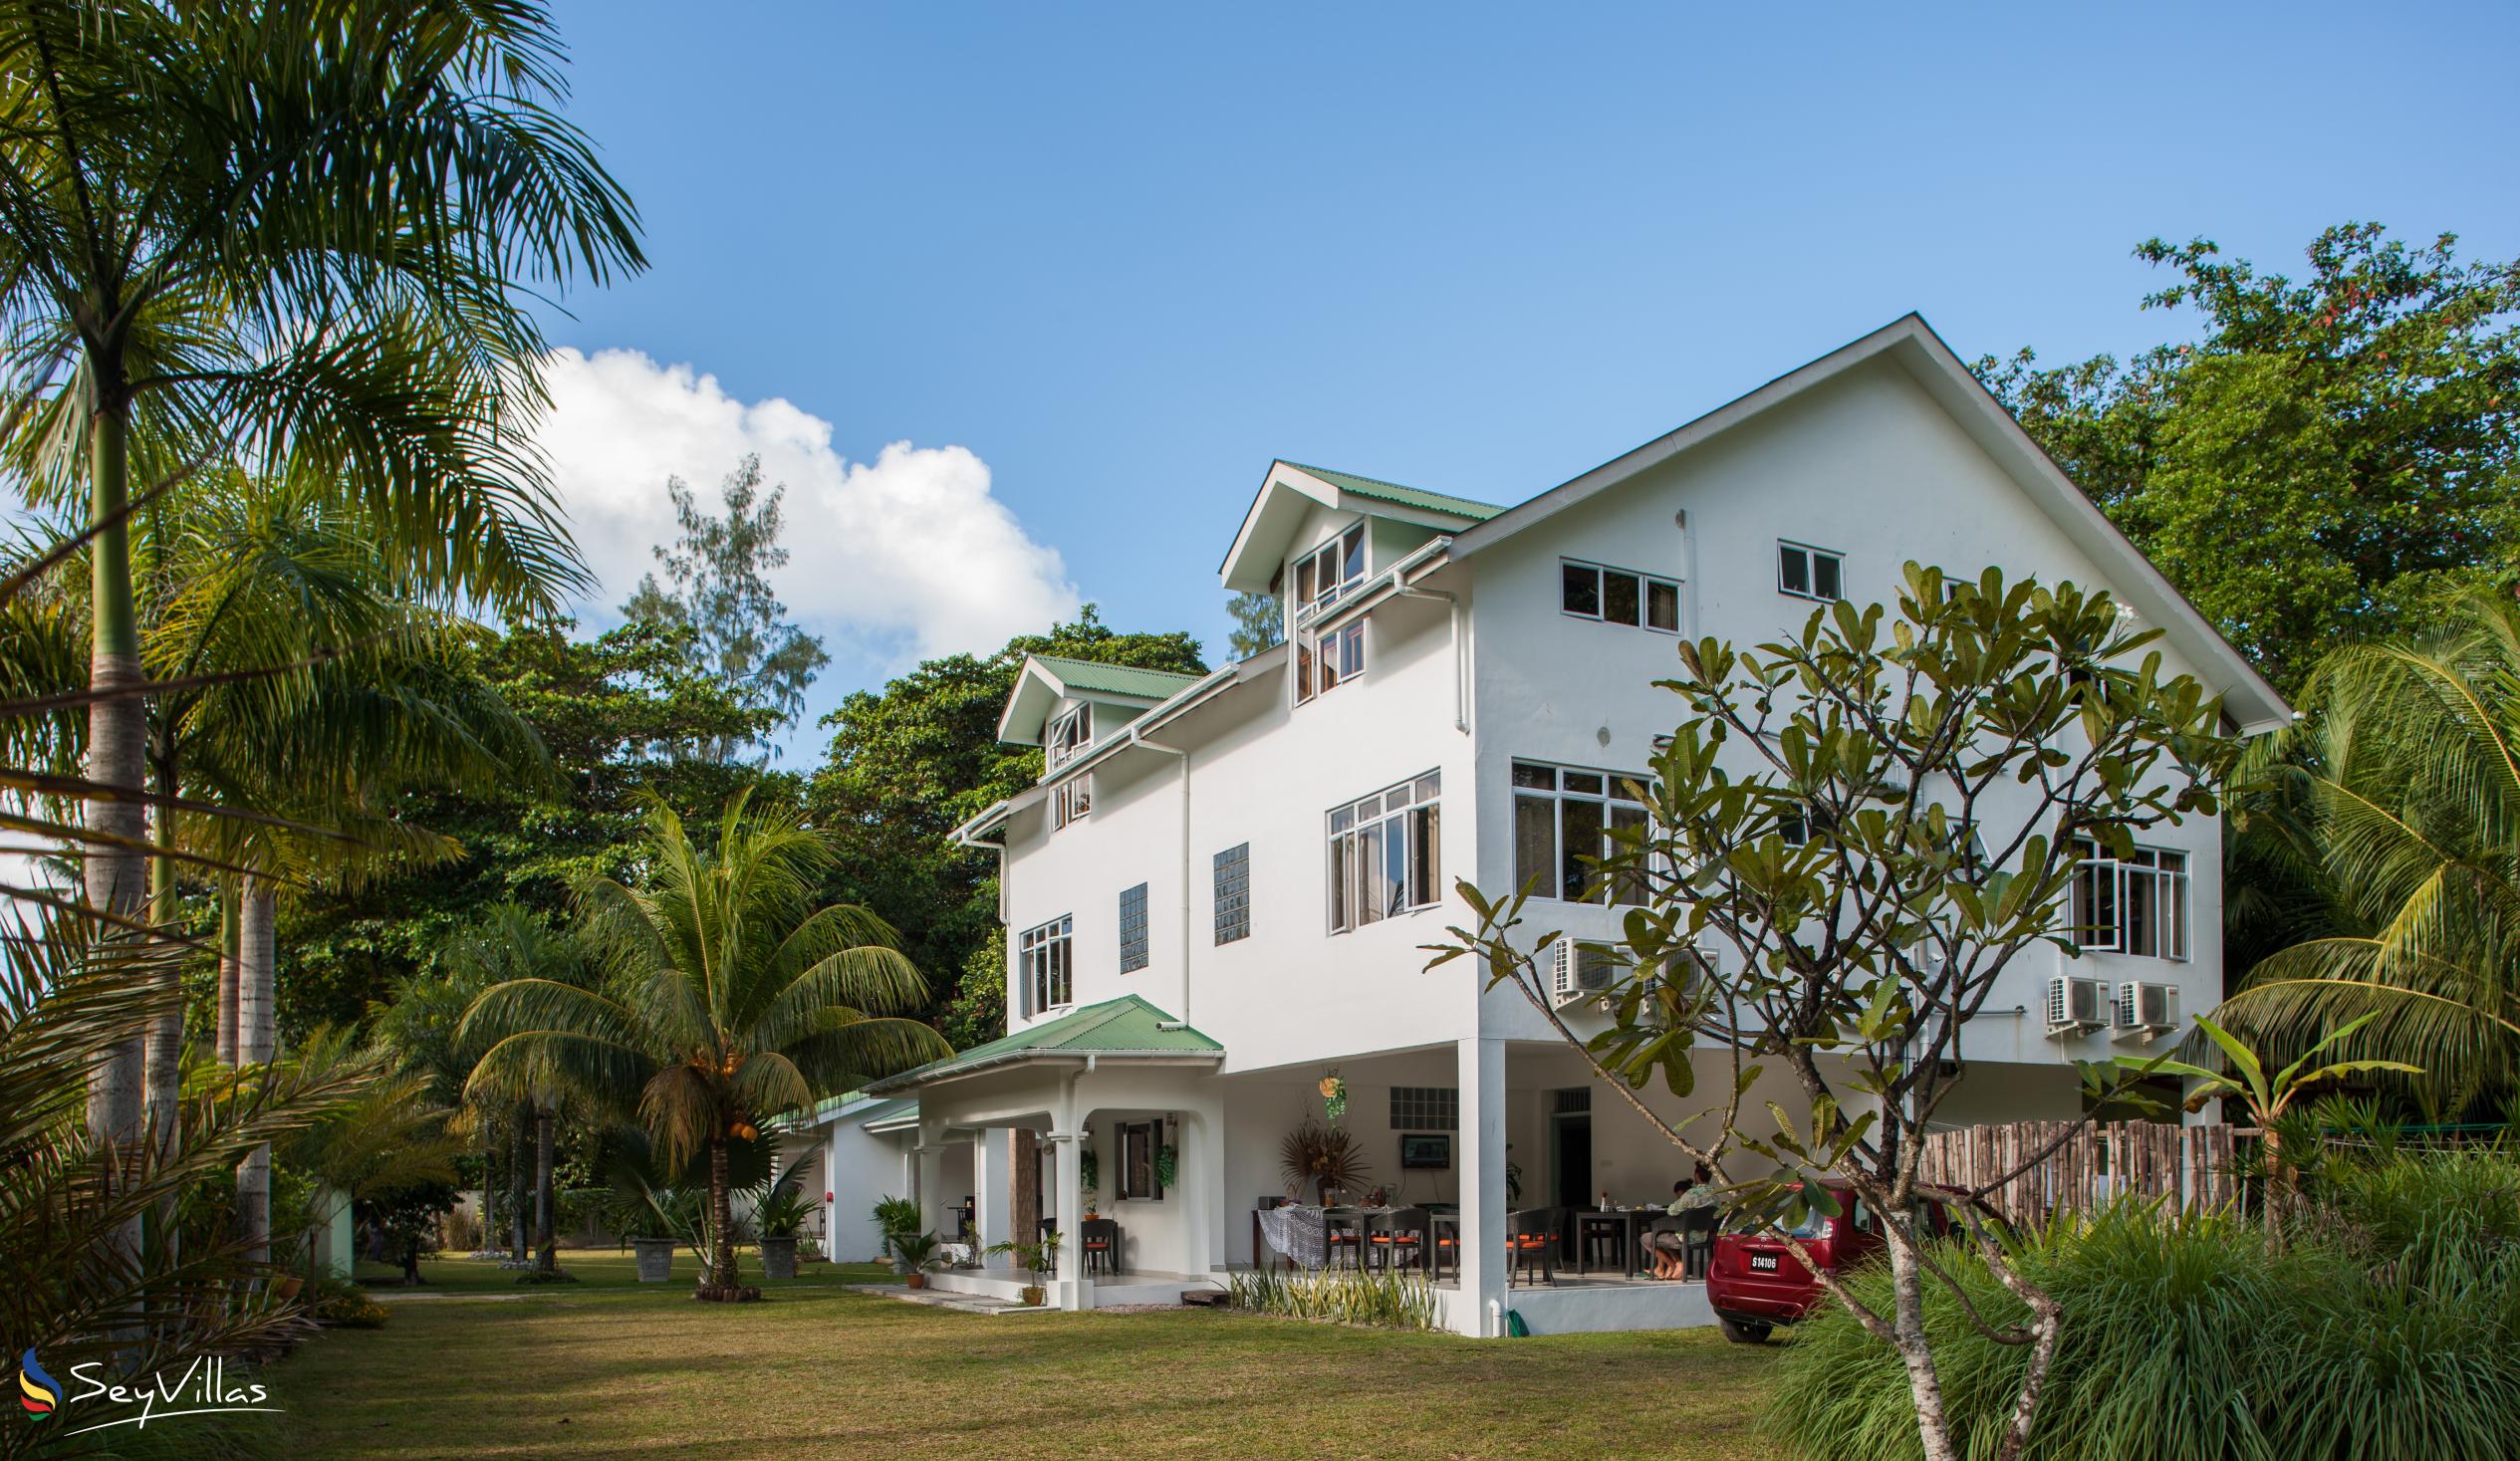 Foto 5: La Modestie Villa - Aussenbereich - Praslin (Seychellen)